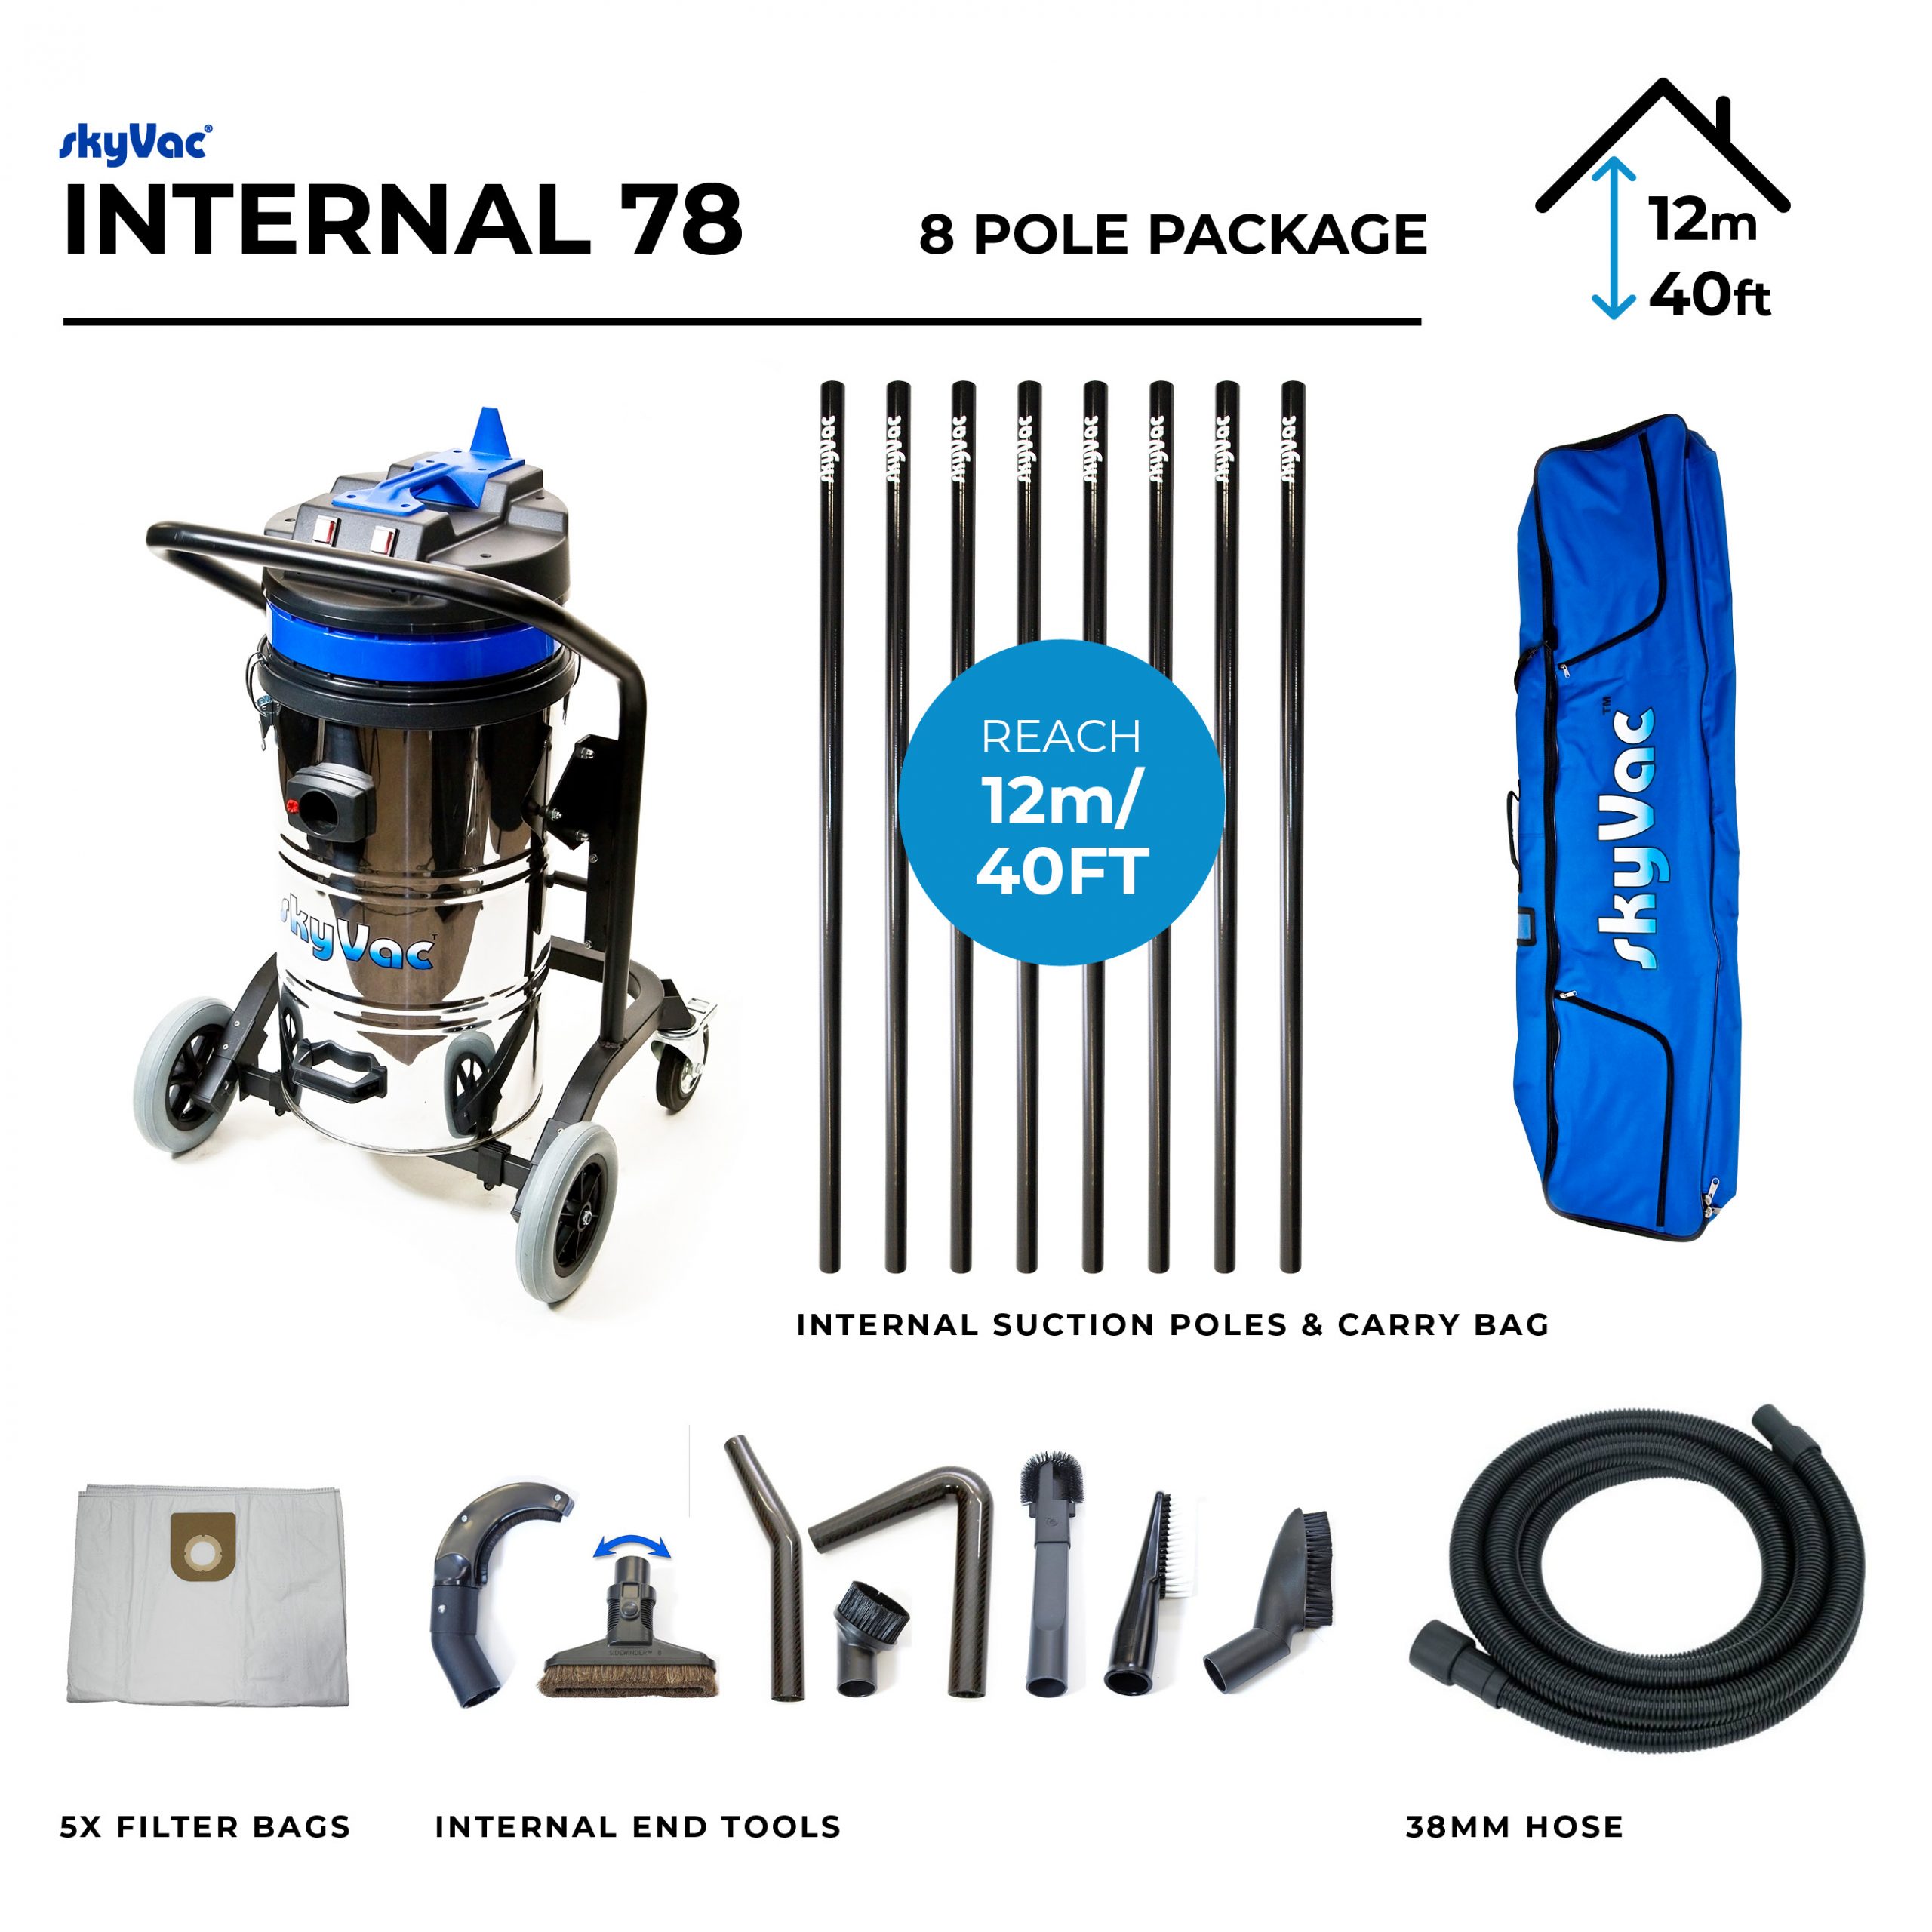 Internal 78 - 8 pole package